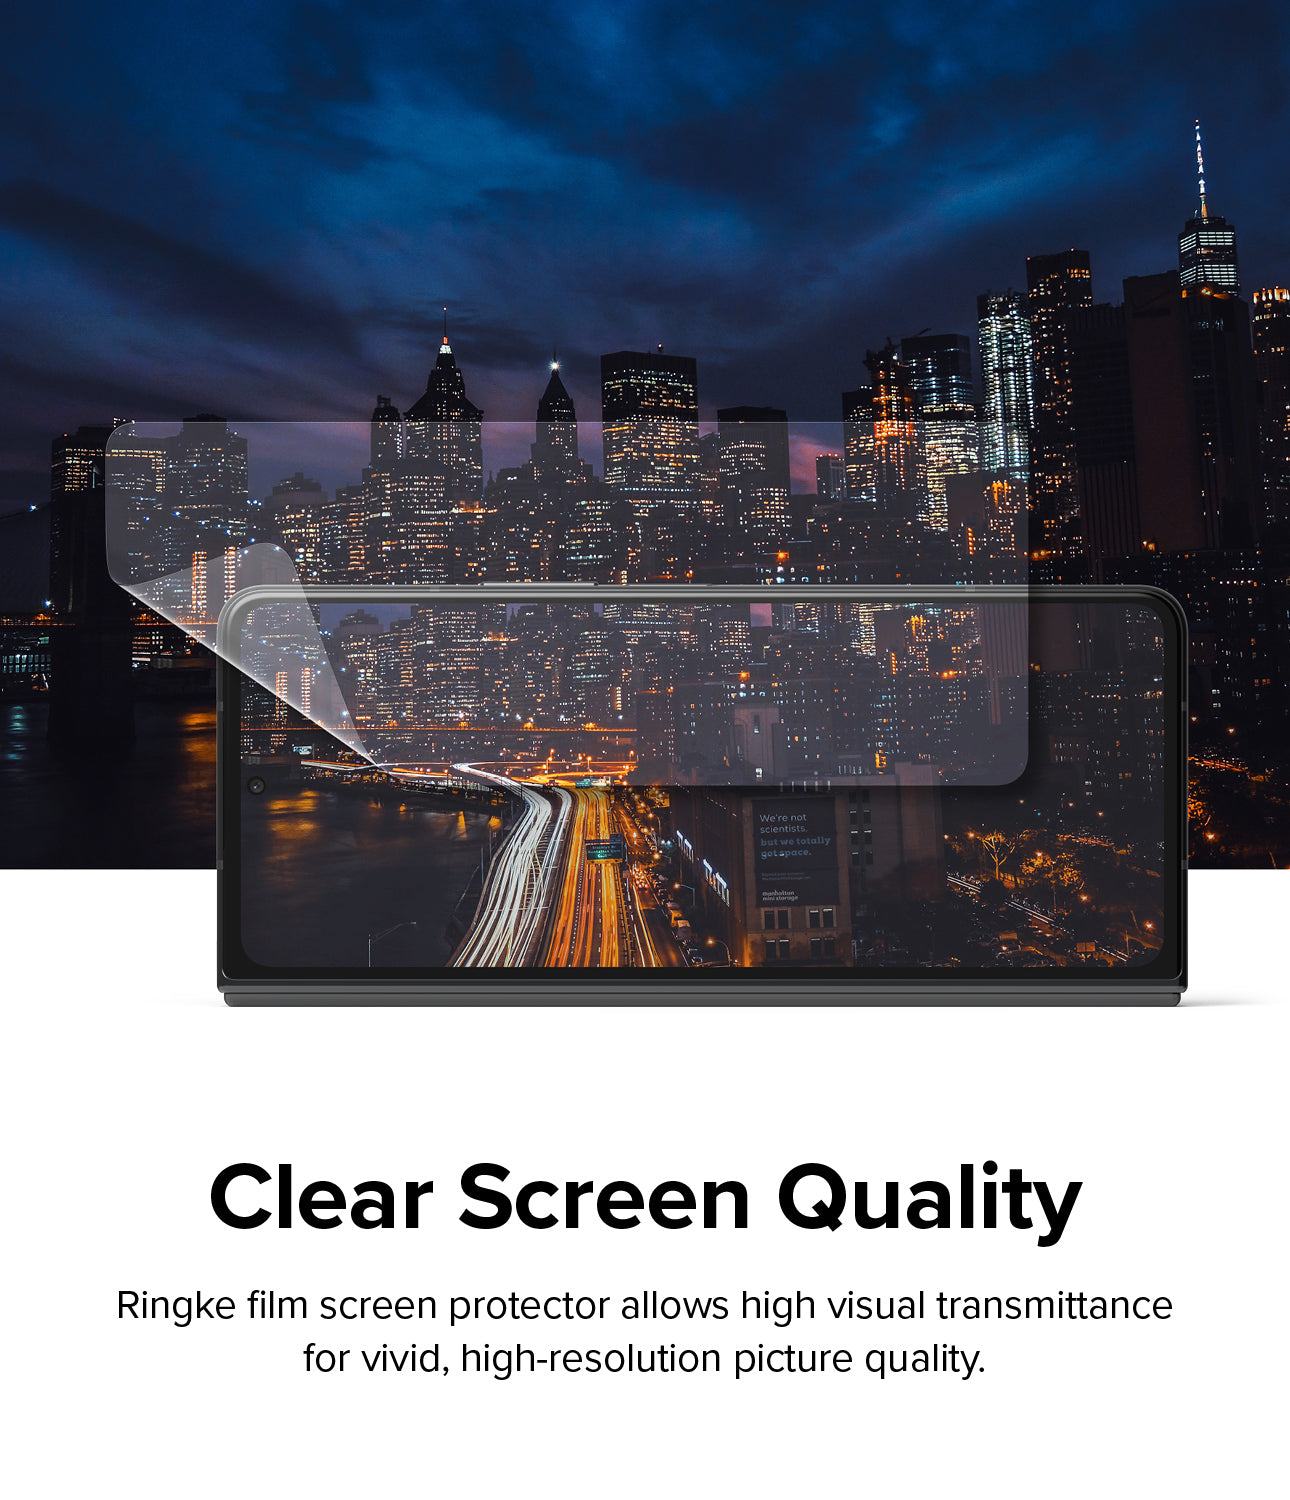 Galaxy Z Fold 4 Screen Protector | Dual Easy Film